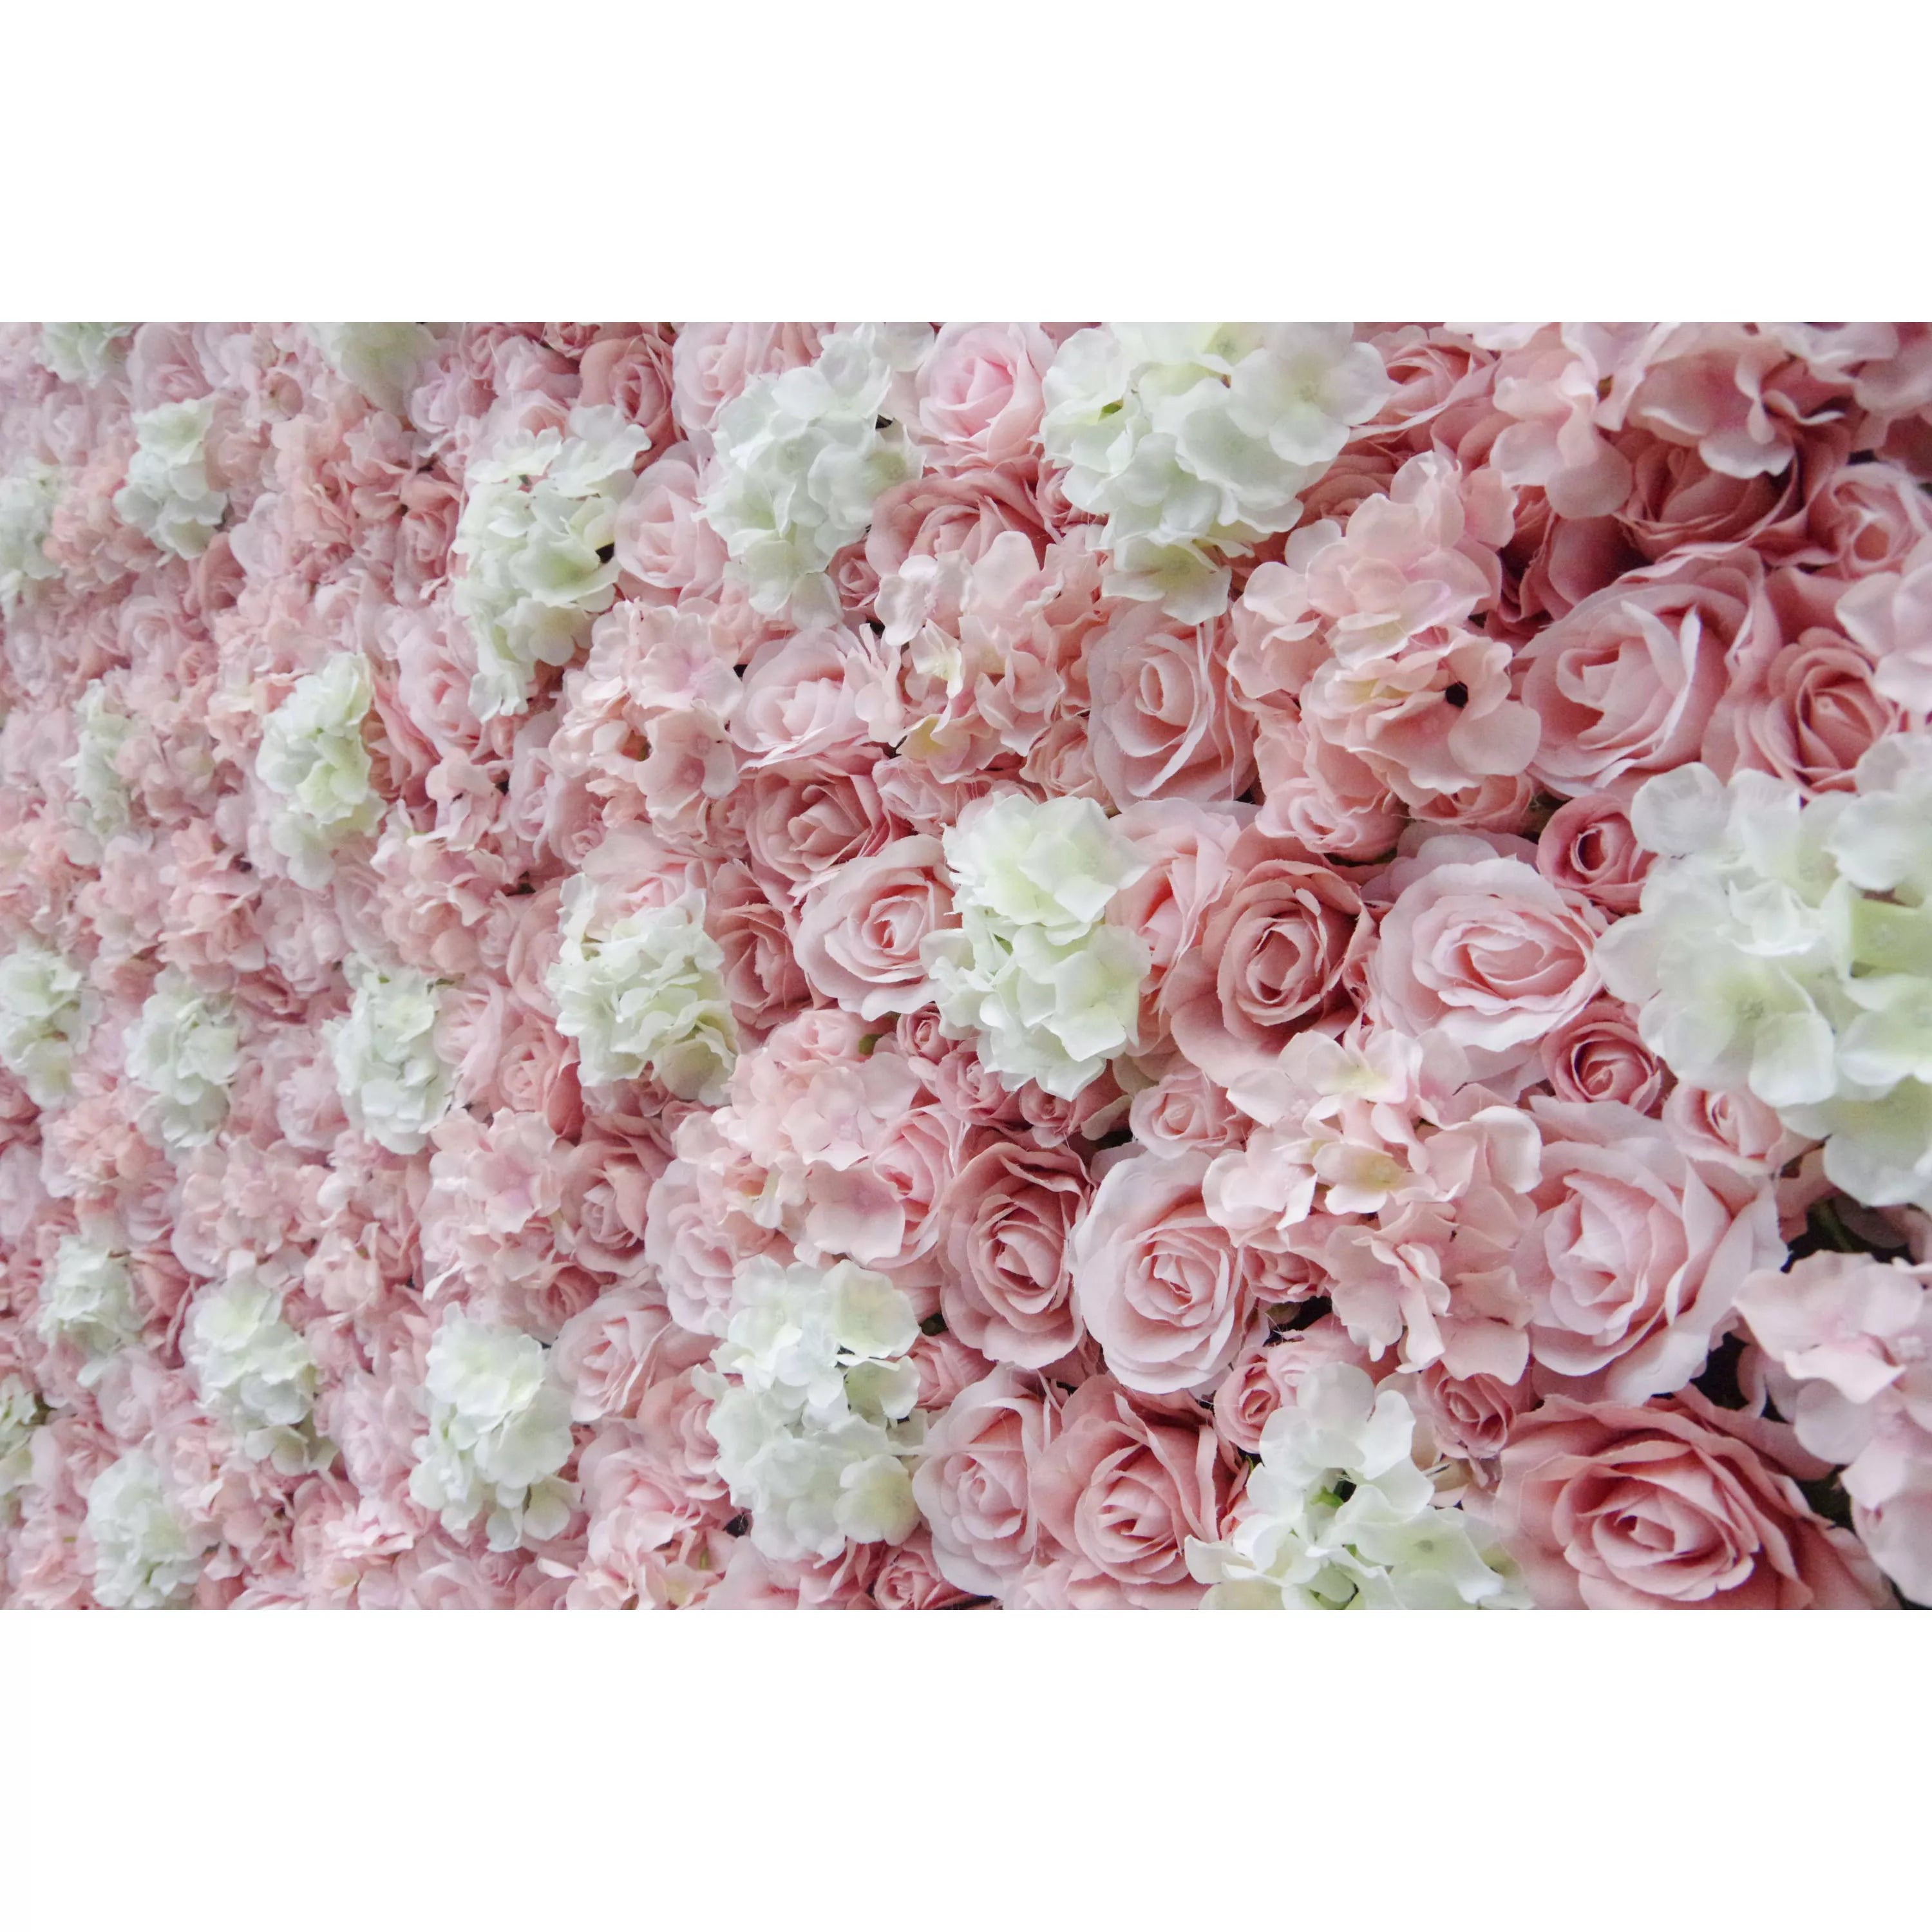 Valar Flowers Roll Up Fabric Artificielle Rose Rose Blanc Fleur Mur Toile de fond de mariage, Décor de fête florale, Photographie d’événement-VF-047-2 